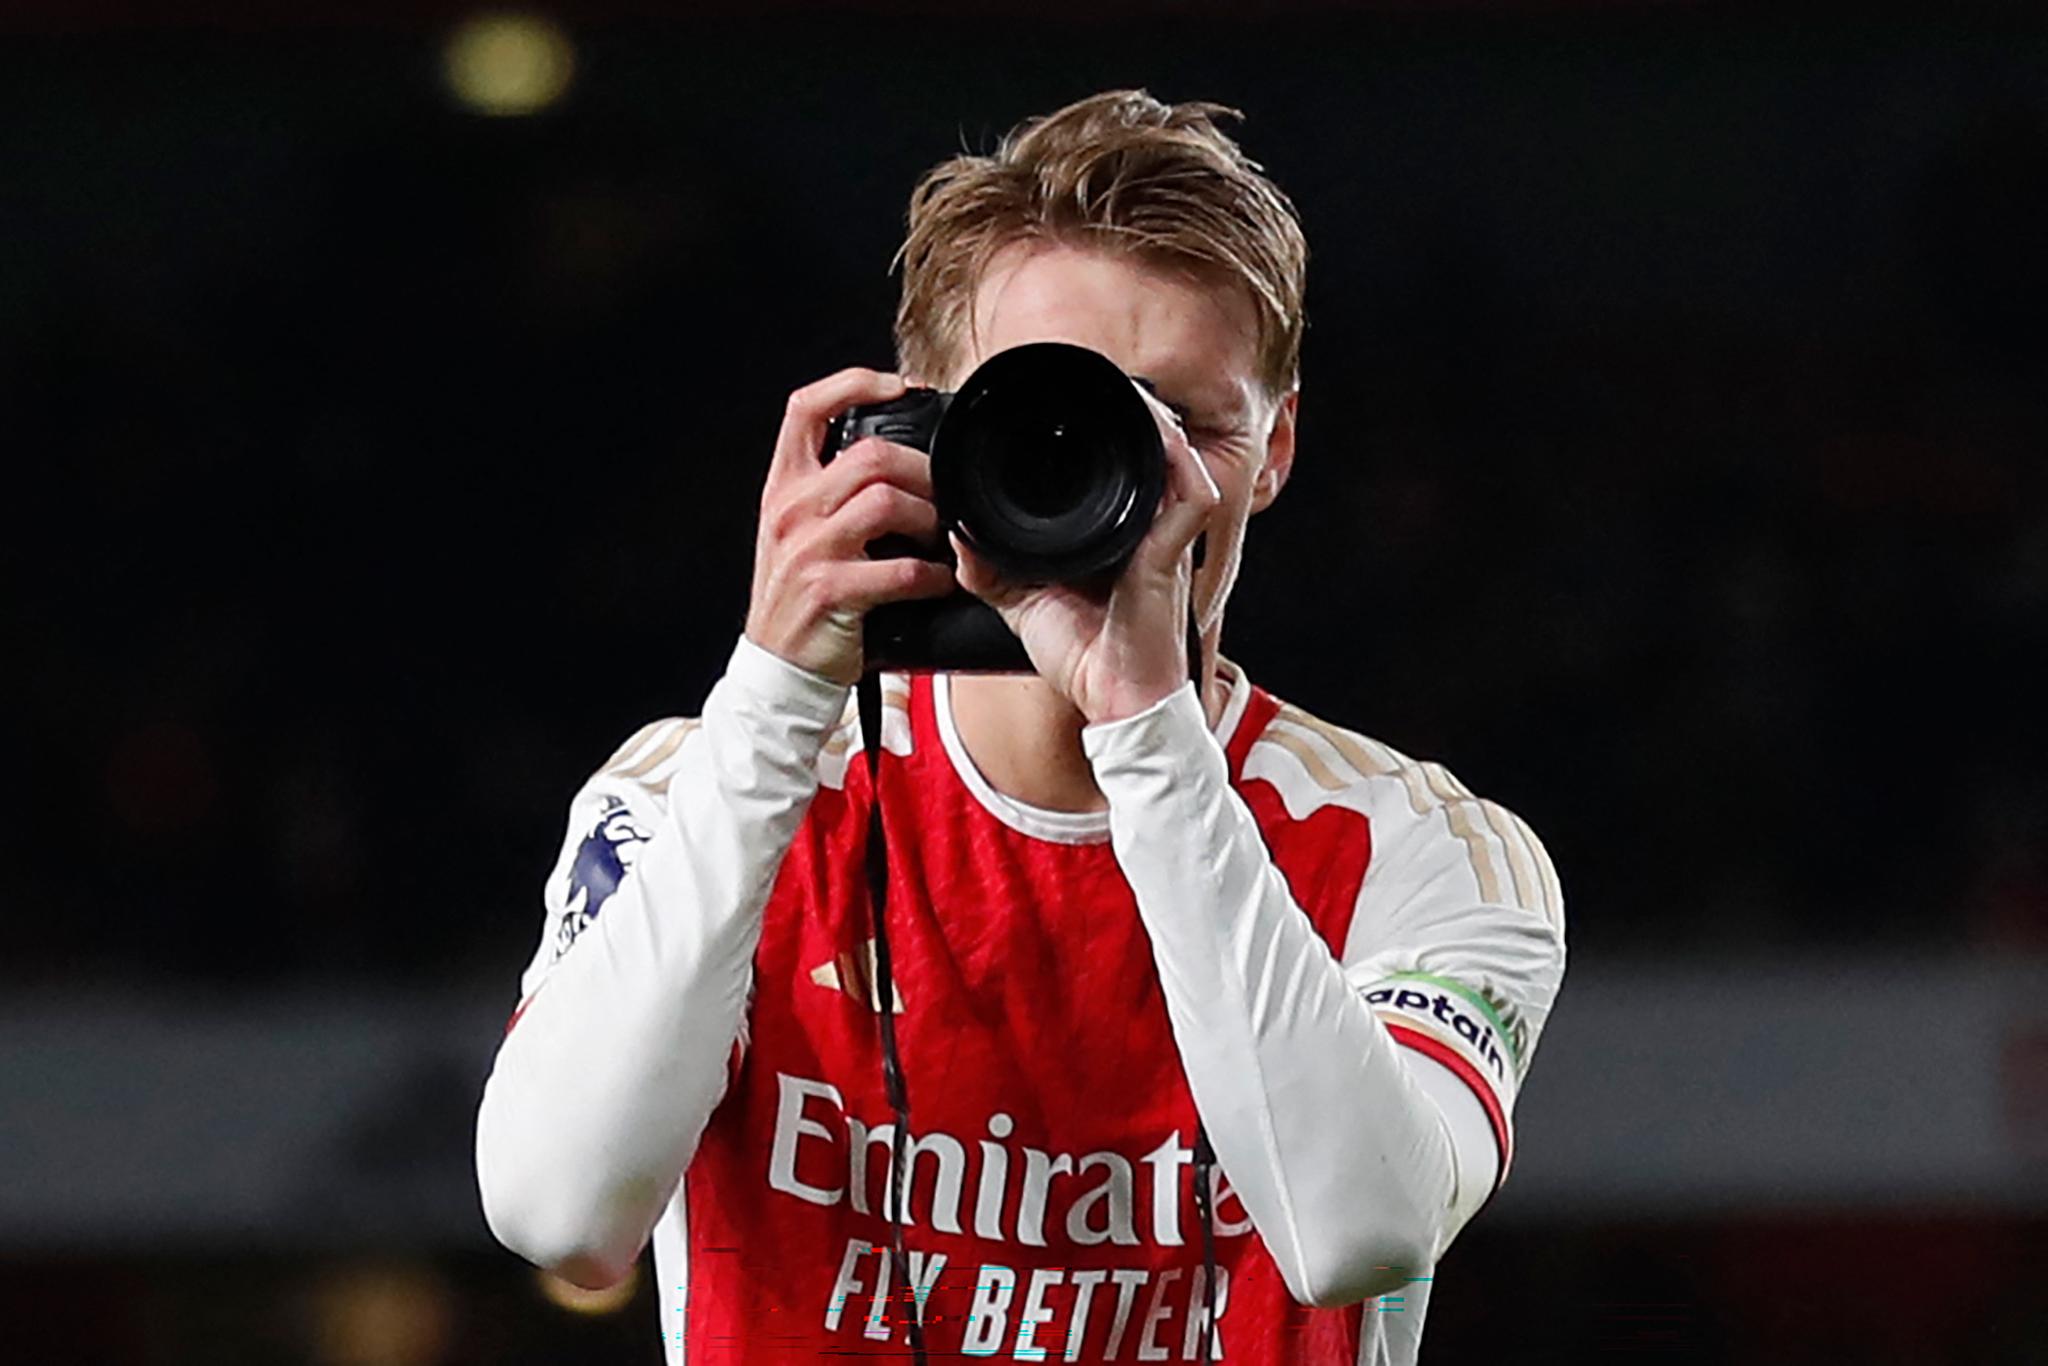 Martin Ødegaard lånte kameraet til den offisielle Arsenal-fotografen etter seieren mot Liverpool i februar.